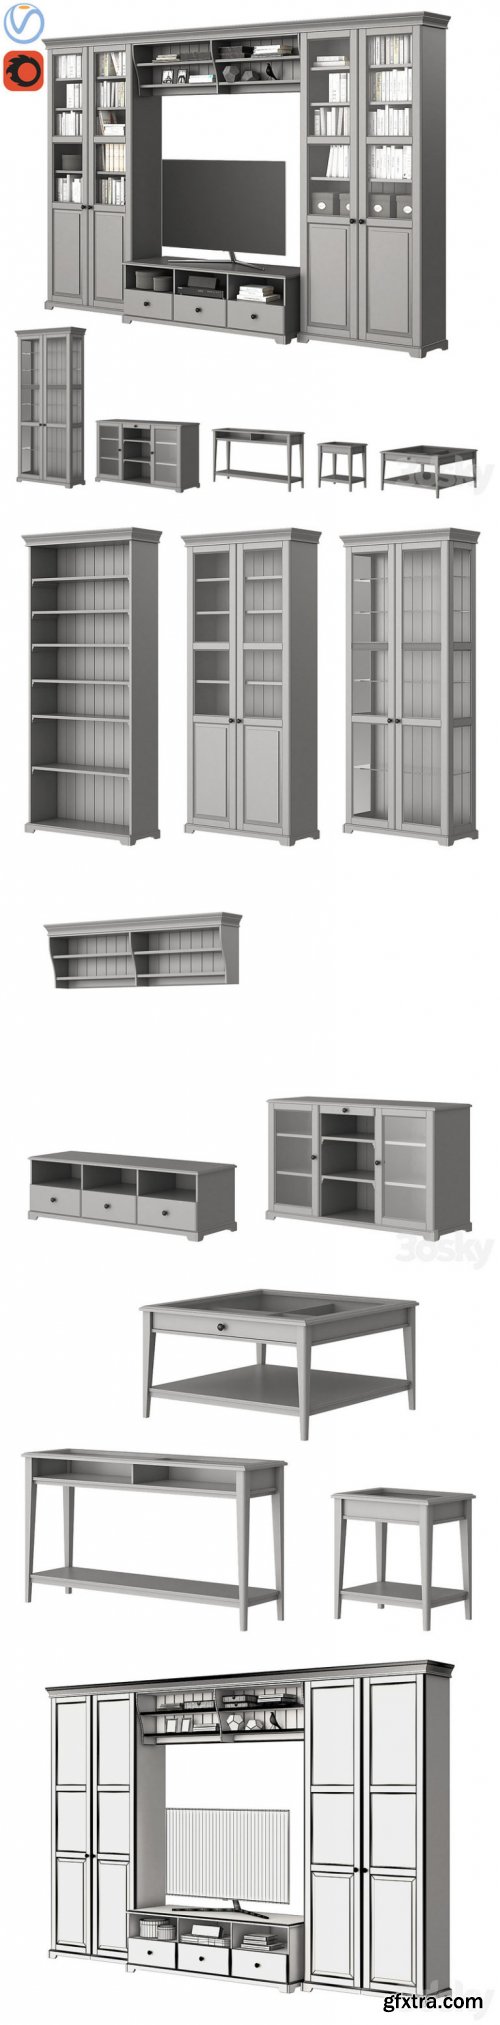 Ikea Liatorp Furniture